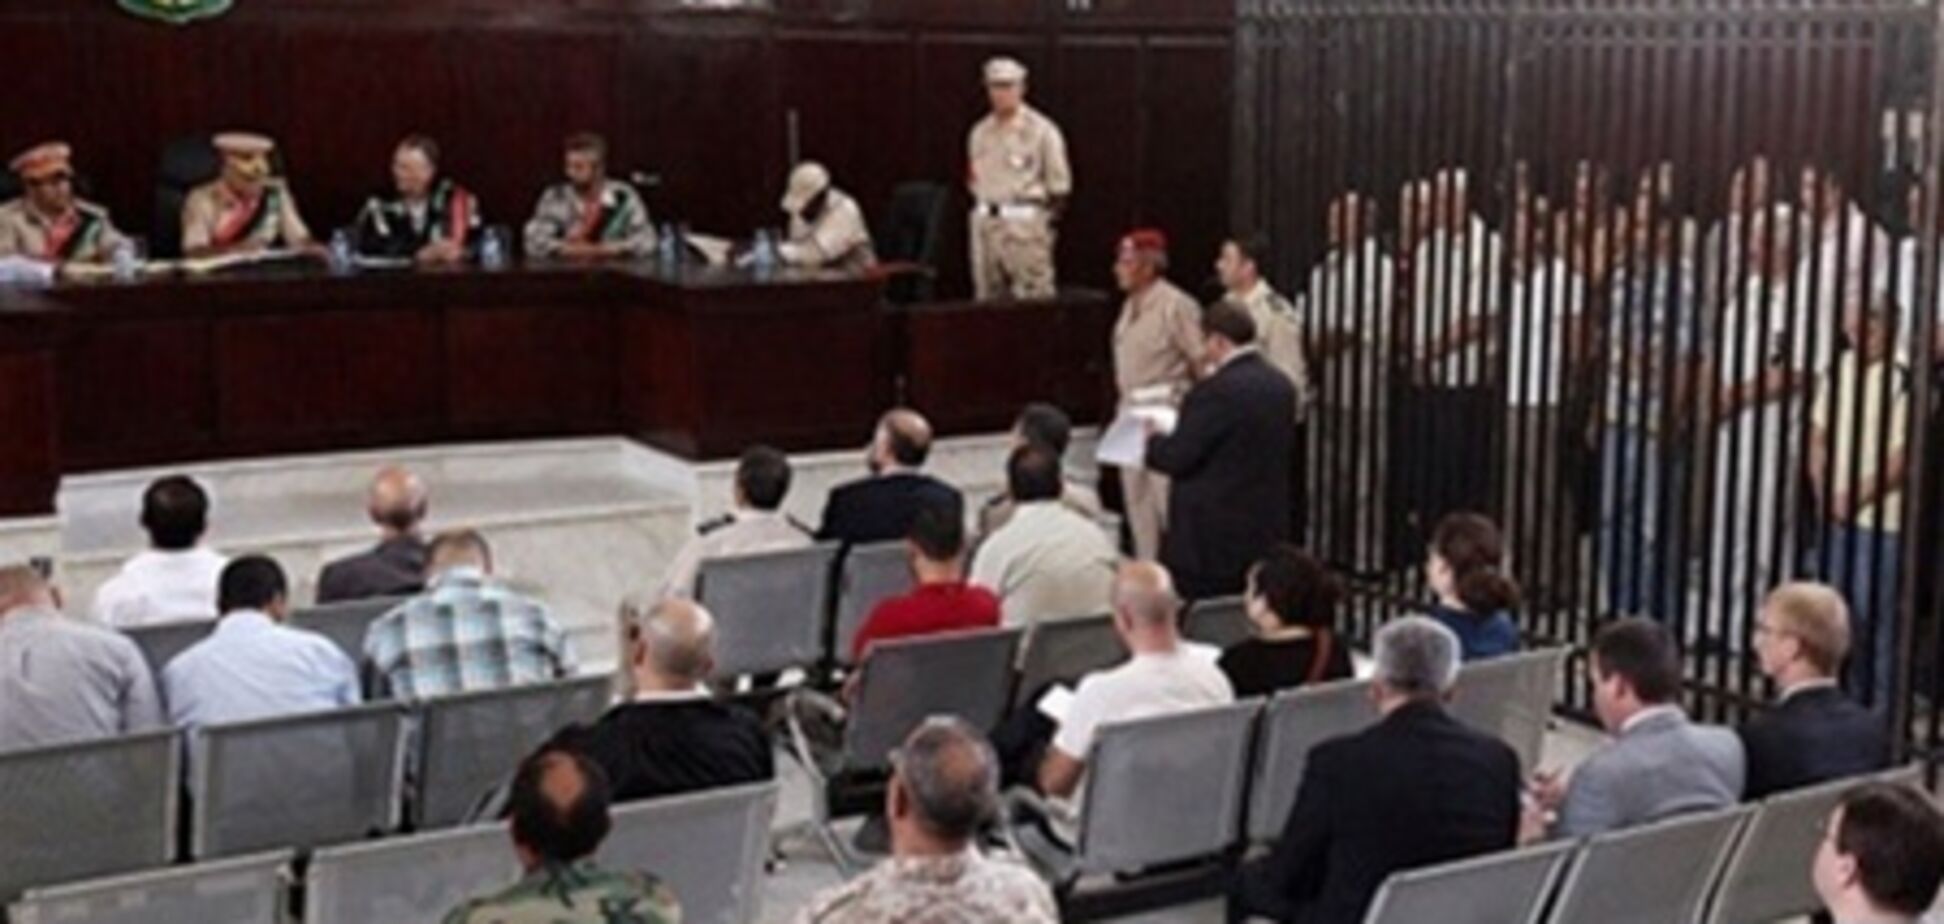 Суд в Ливии рассмотрит апелляцию осужденных украинцев 1 мая